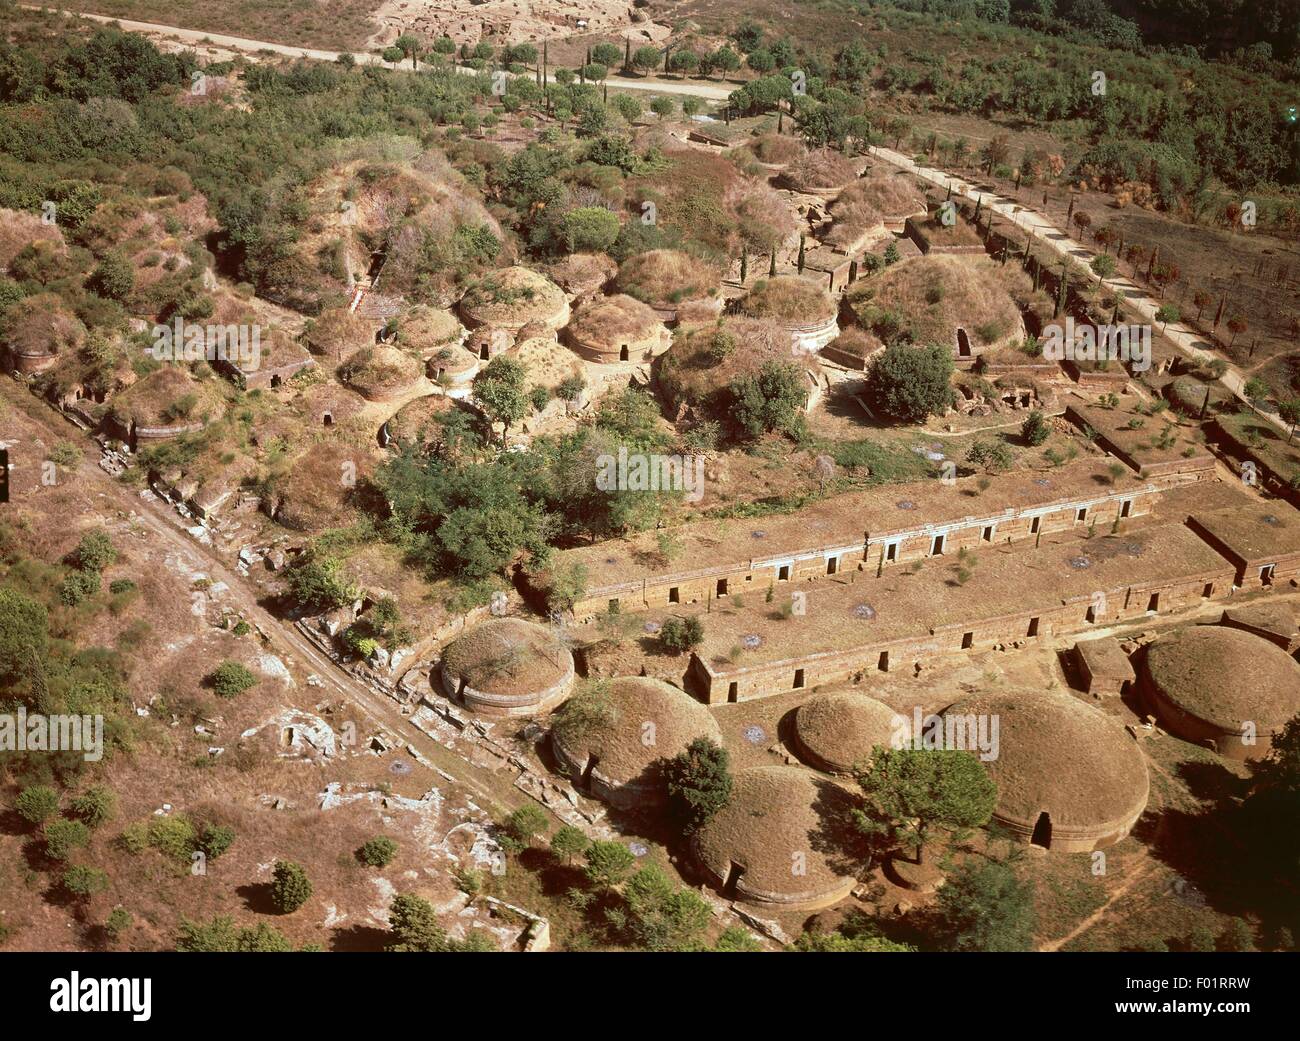 Vista aerea della necropoli etrusca di Cerveteri, provincia di Roma - Regione Lazio, Italia. Foto Stock